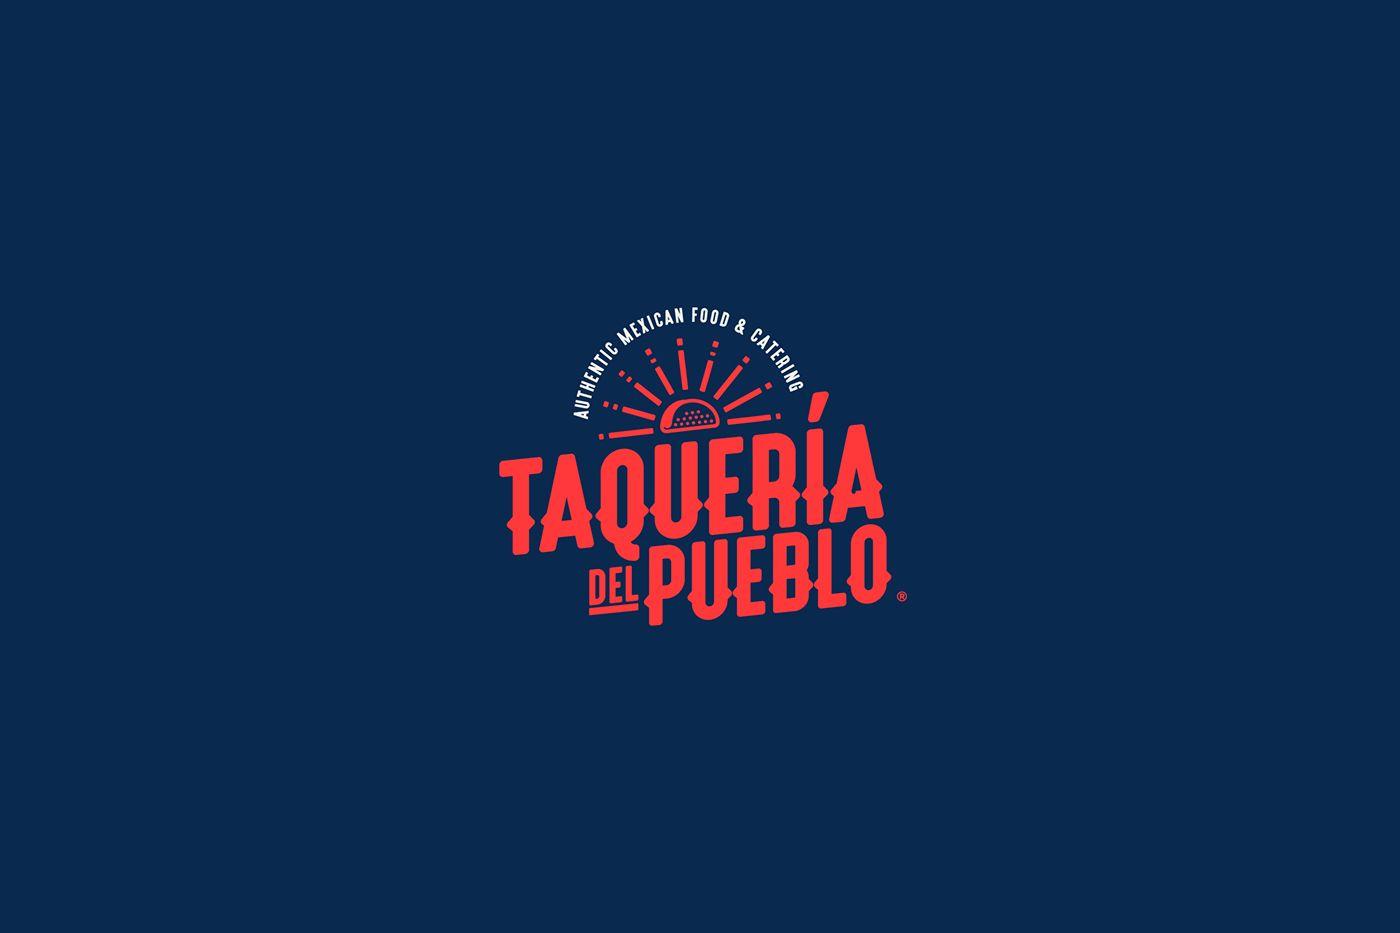 Taqueria Logo - La Taquería del pueblo. on Behance